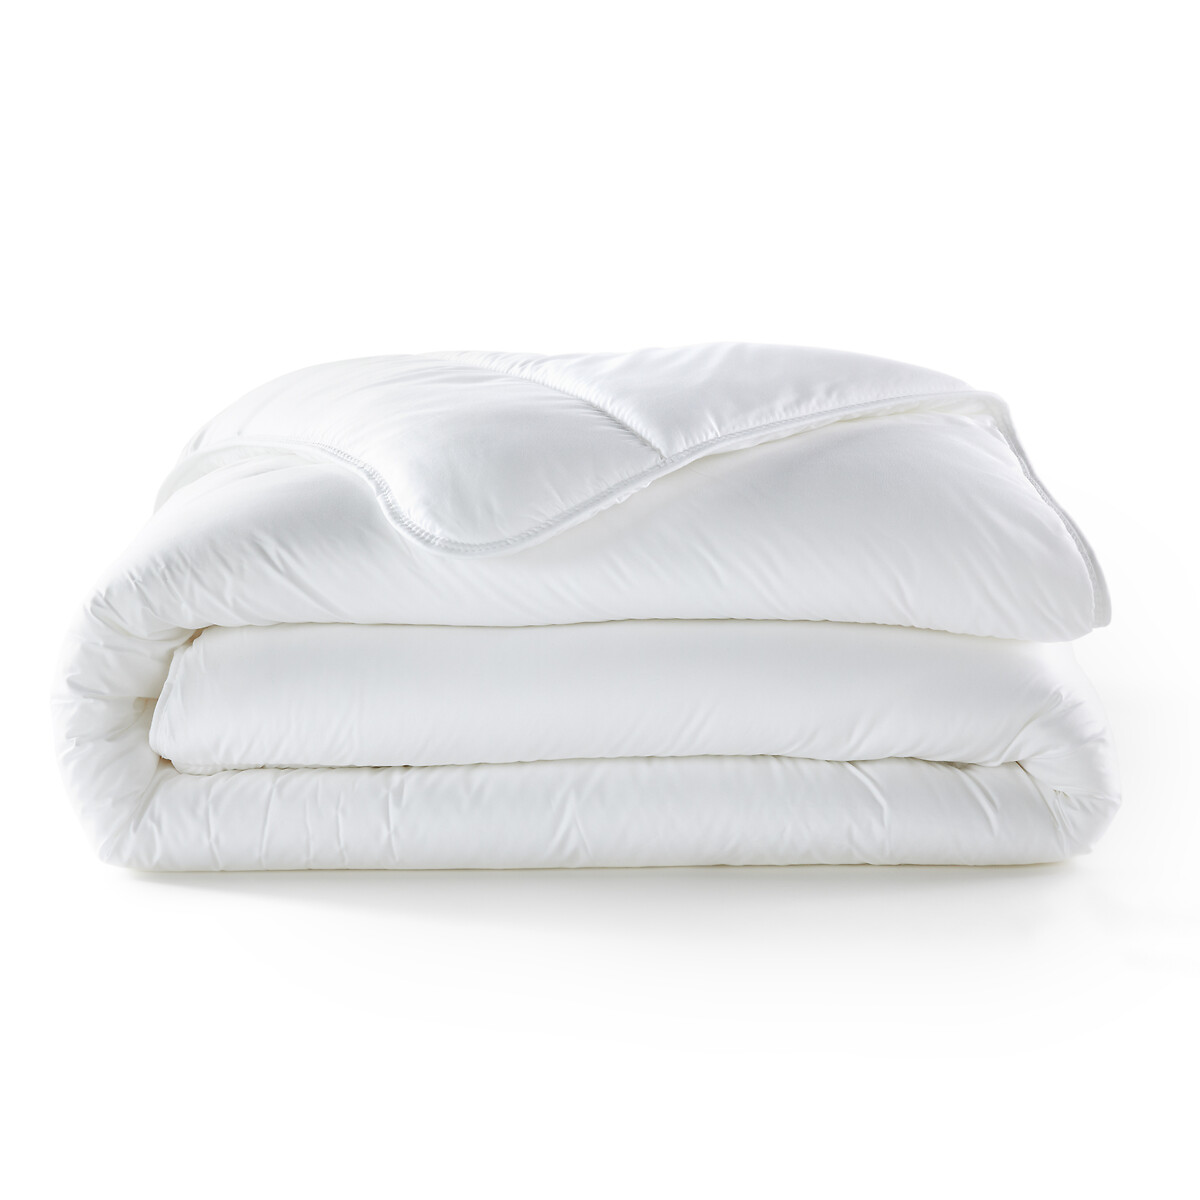 Комплект из микрофибры одеяло 1-сп LaRedoute подушка 140 x 200 см белый, размер 140 x 200 см - фото 2